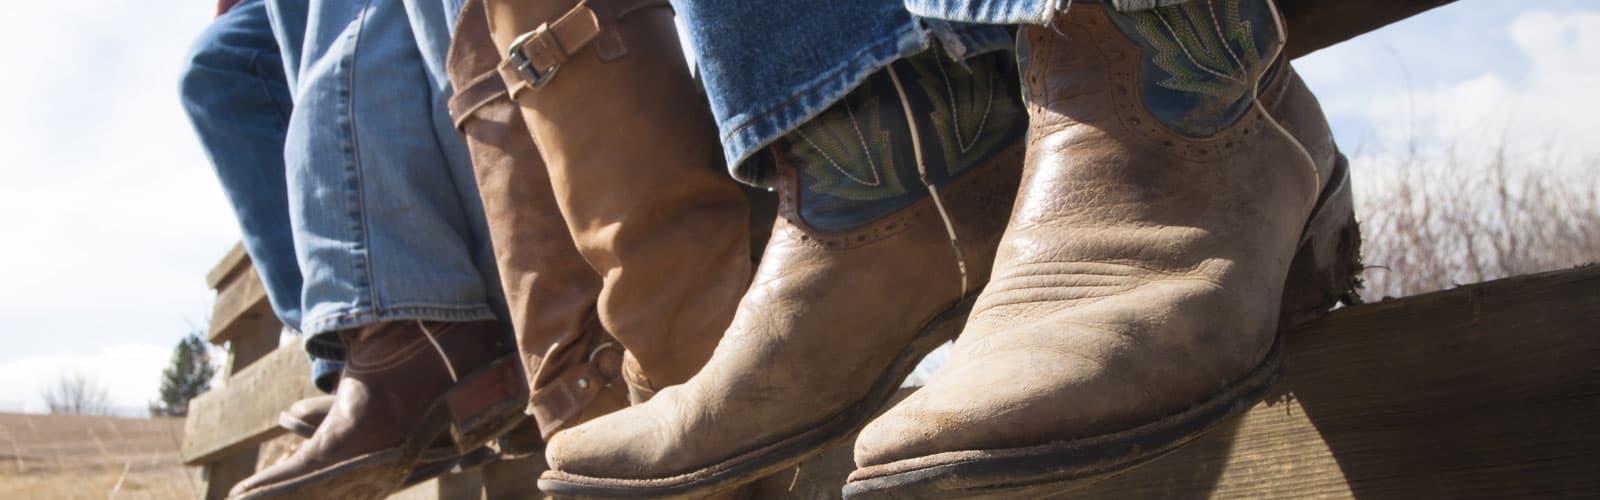 low heel cowboy boots mens